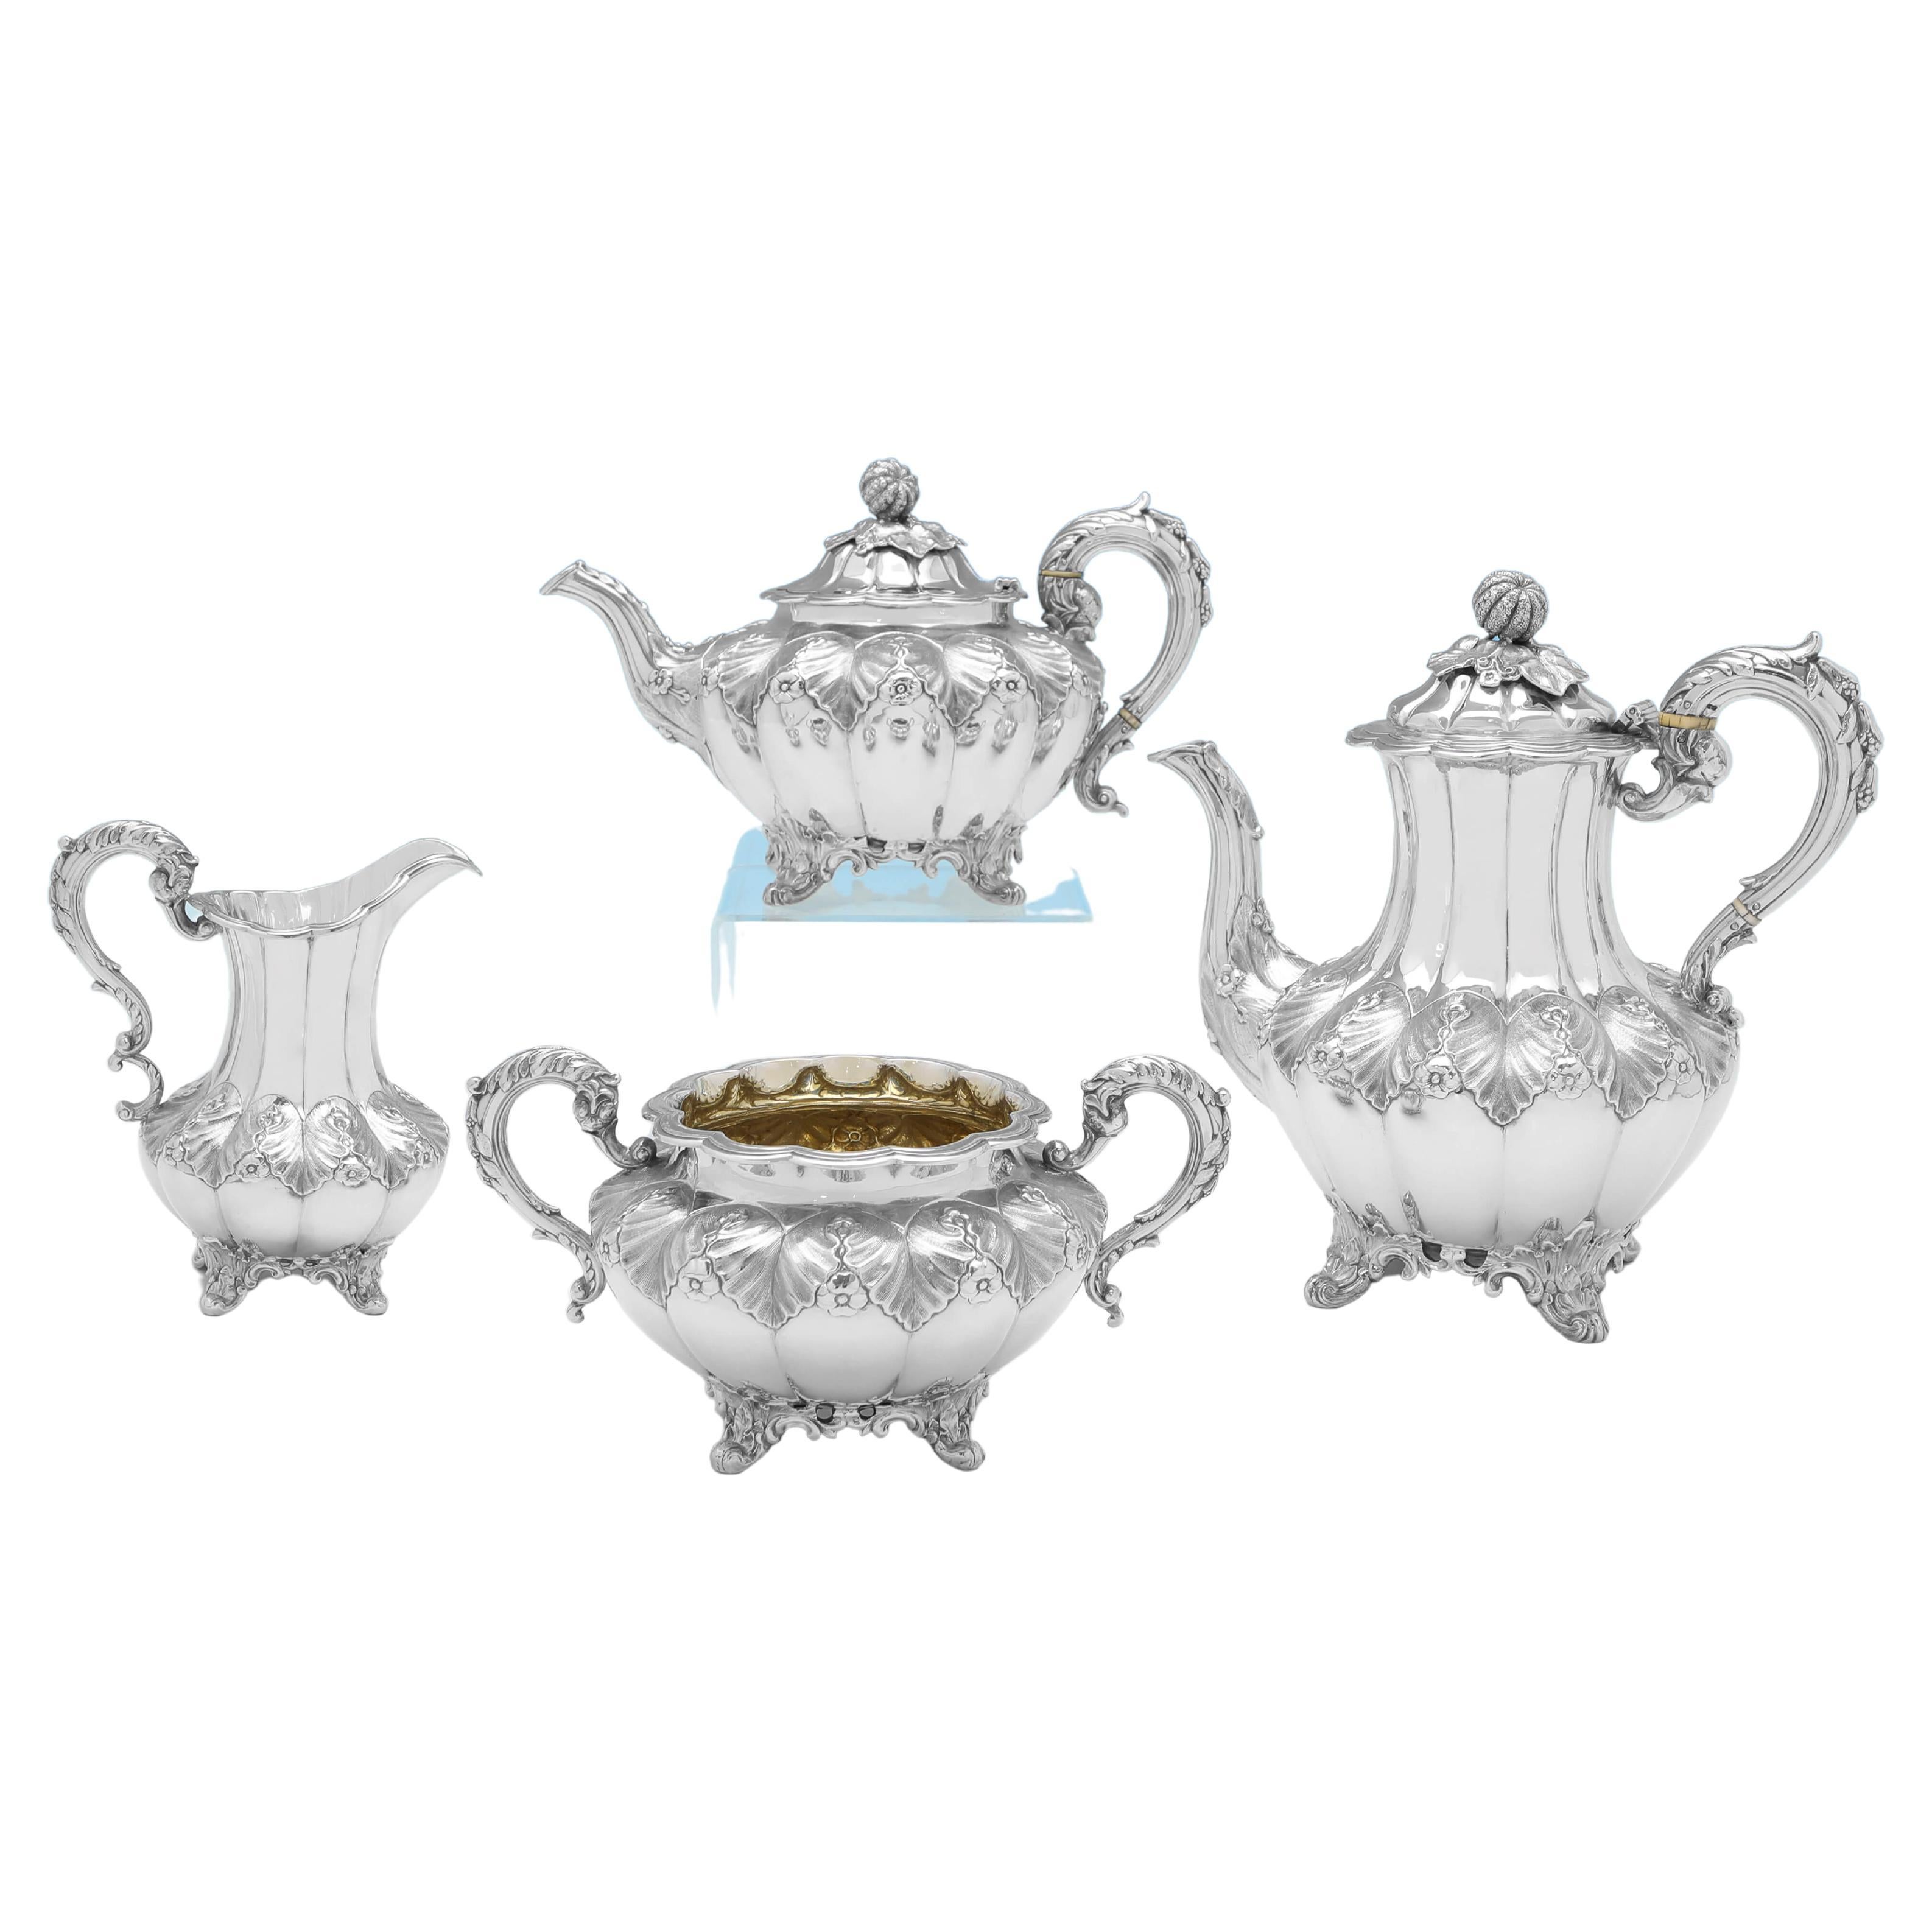 Antikes viktorianisches Tee- und Kaffee-Set aus Sterlingsilber in Melonenform - London 1851